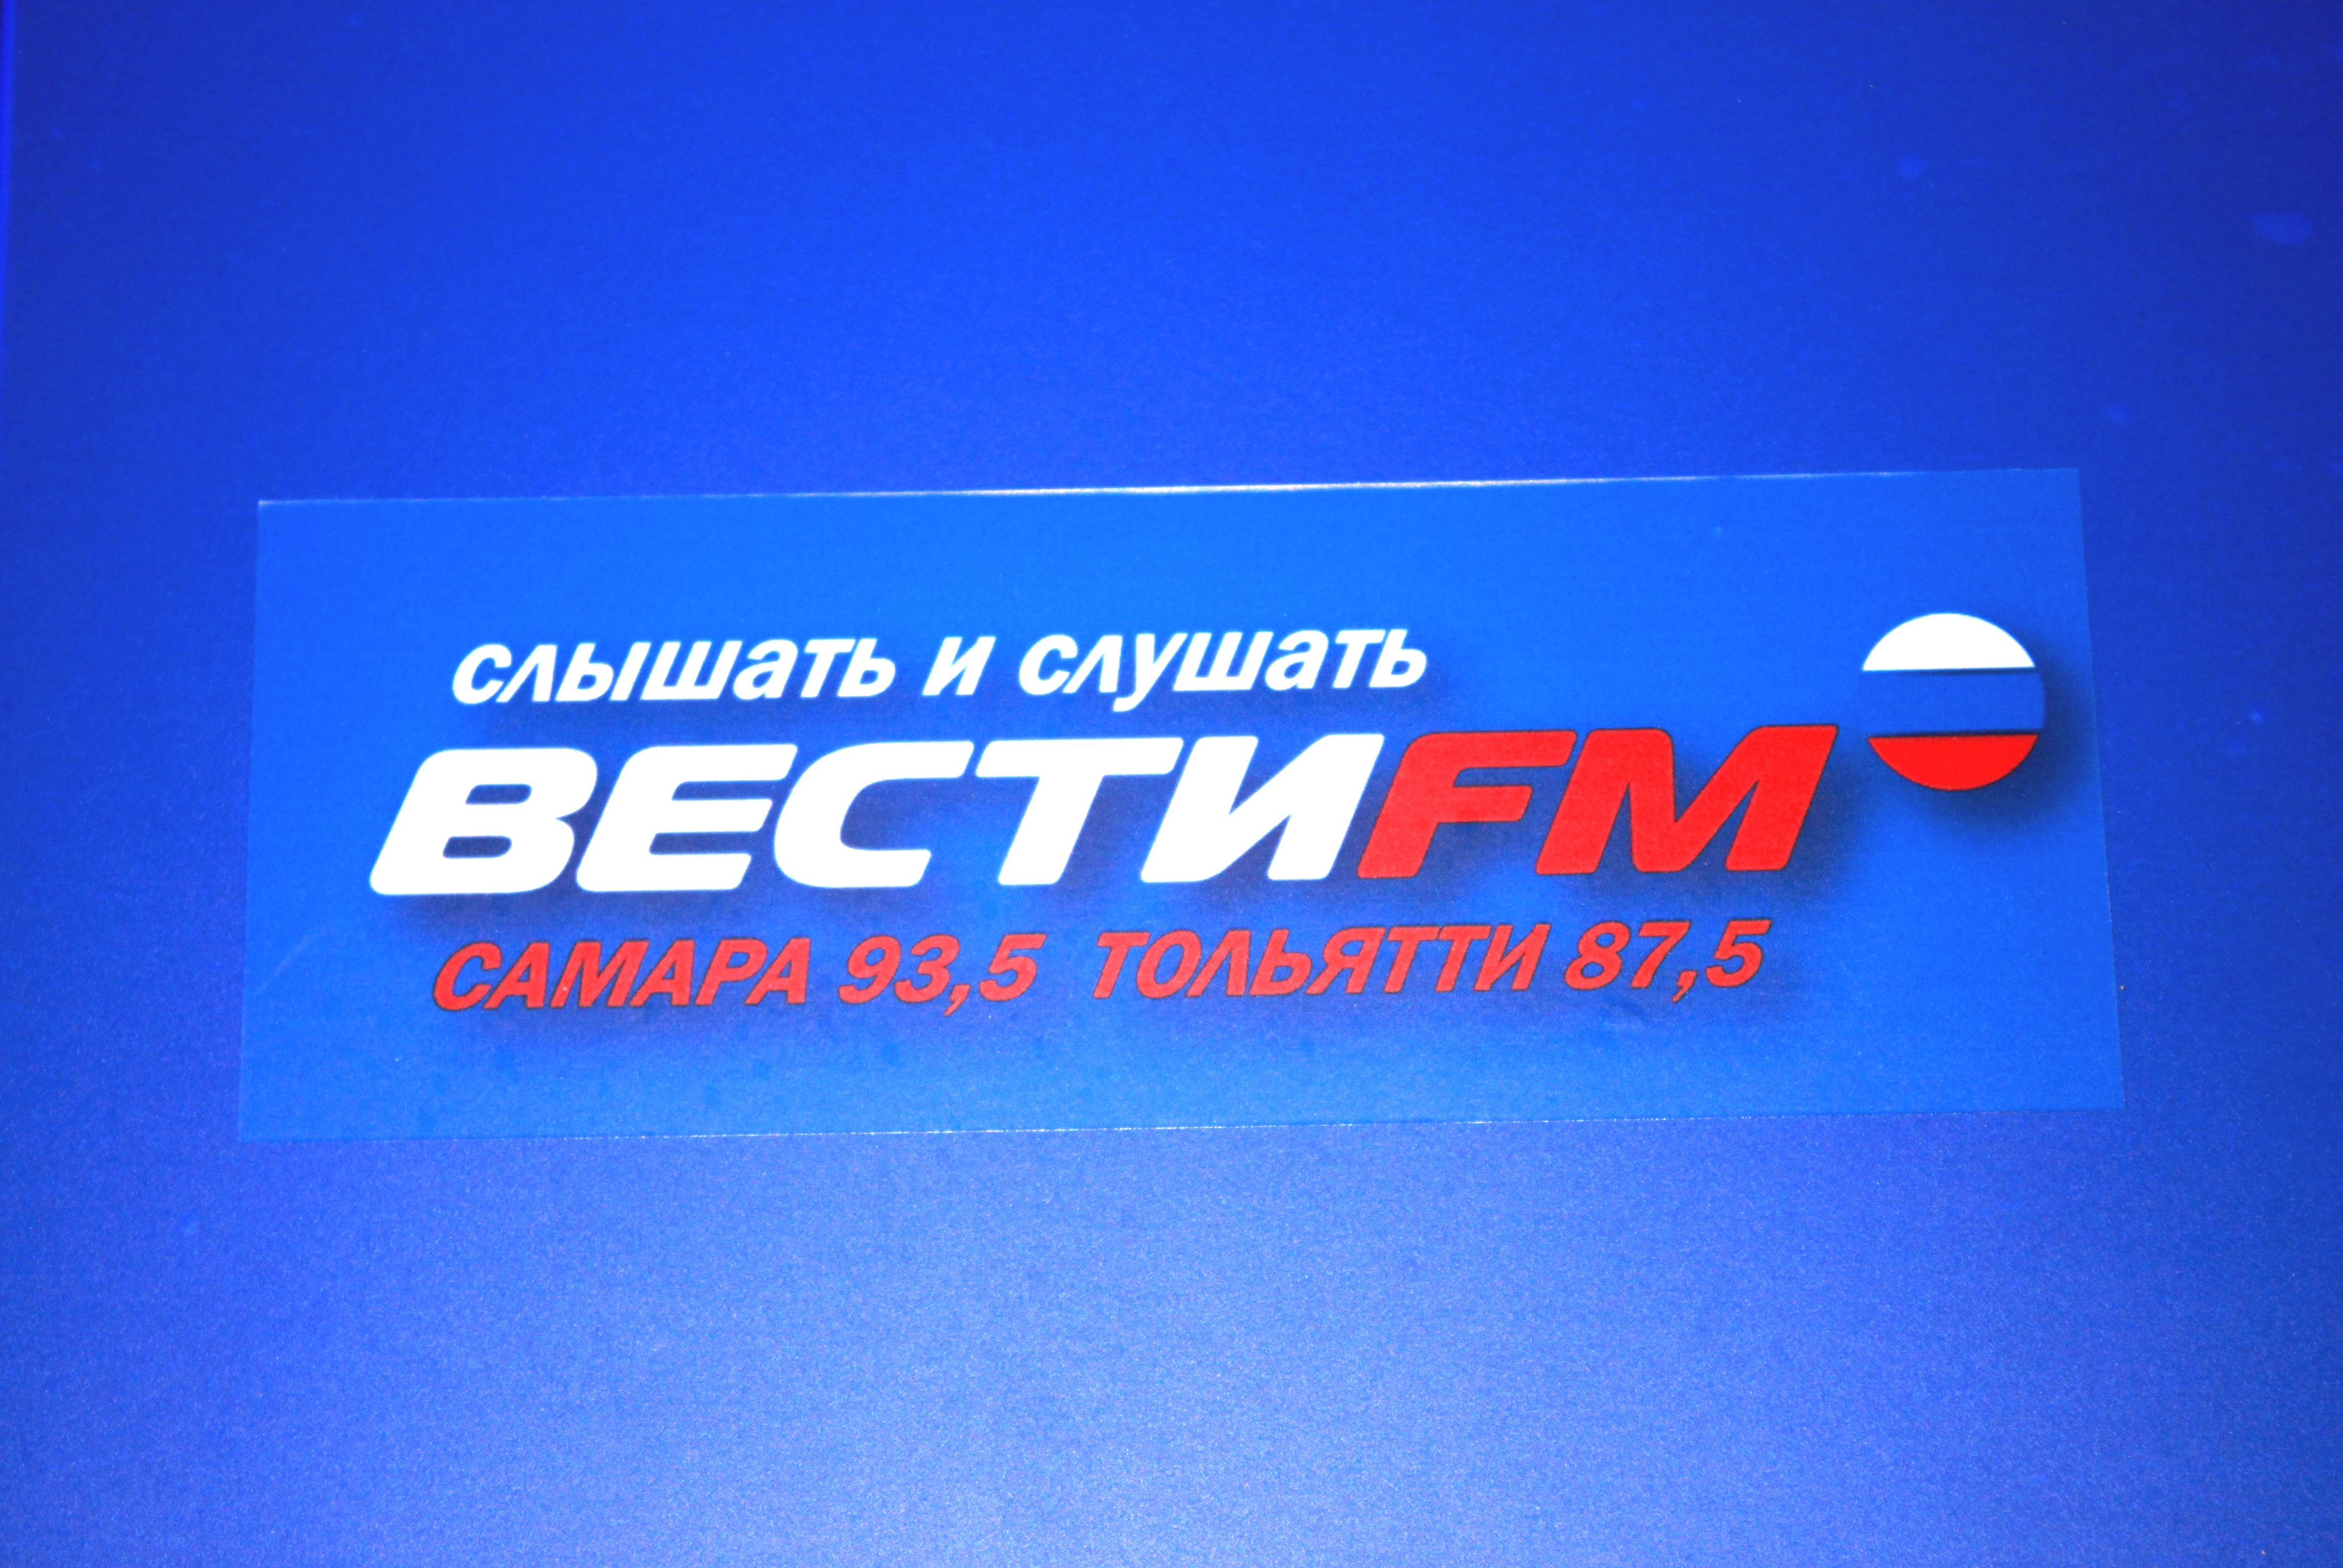 Радио вести 24 фм. Вести ФМ. Вести fm логотип. Логотип радиостанции вести ФМ. Вести ФМ студия.